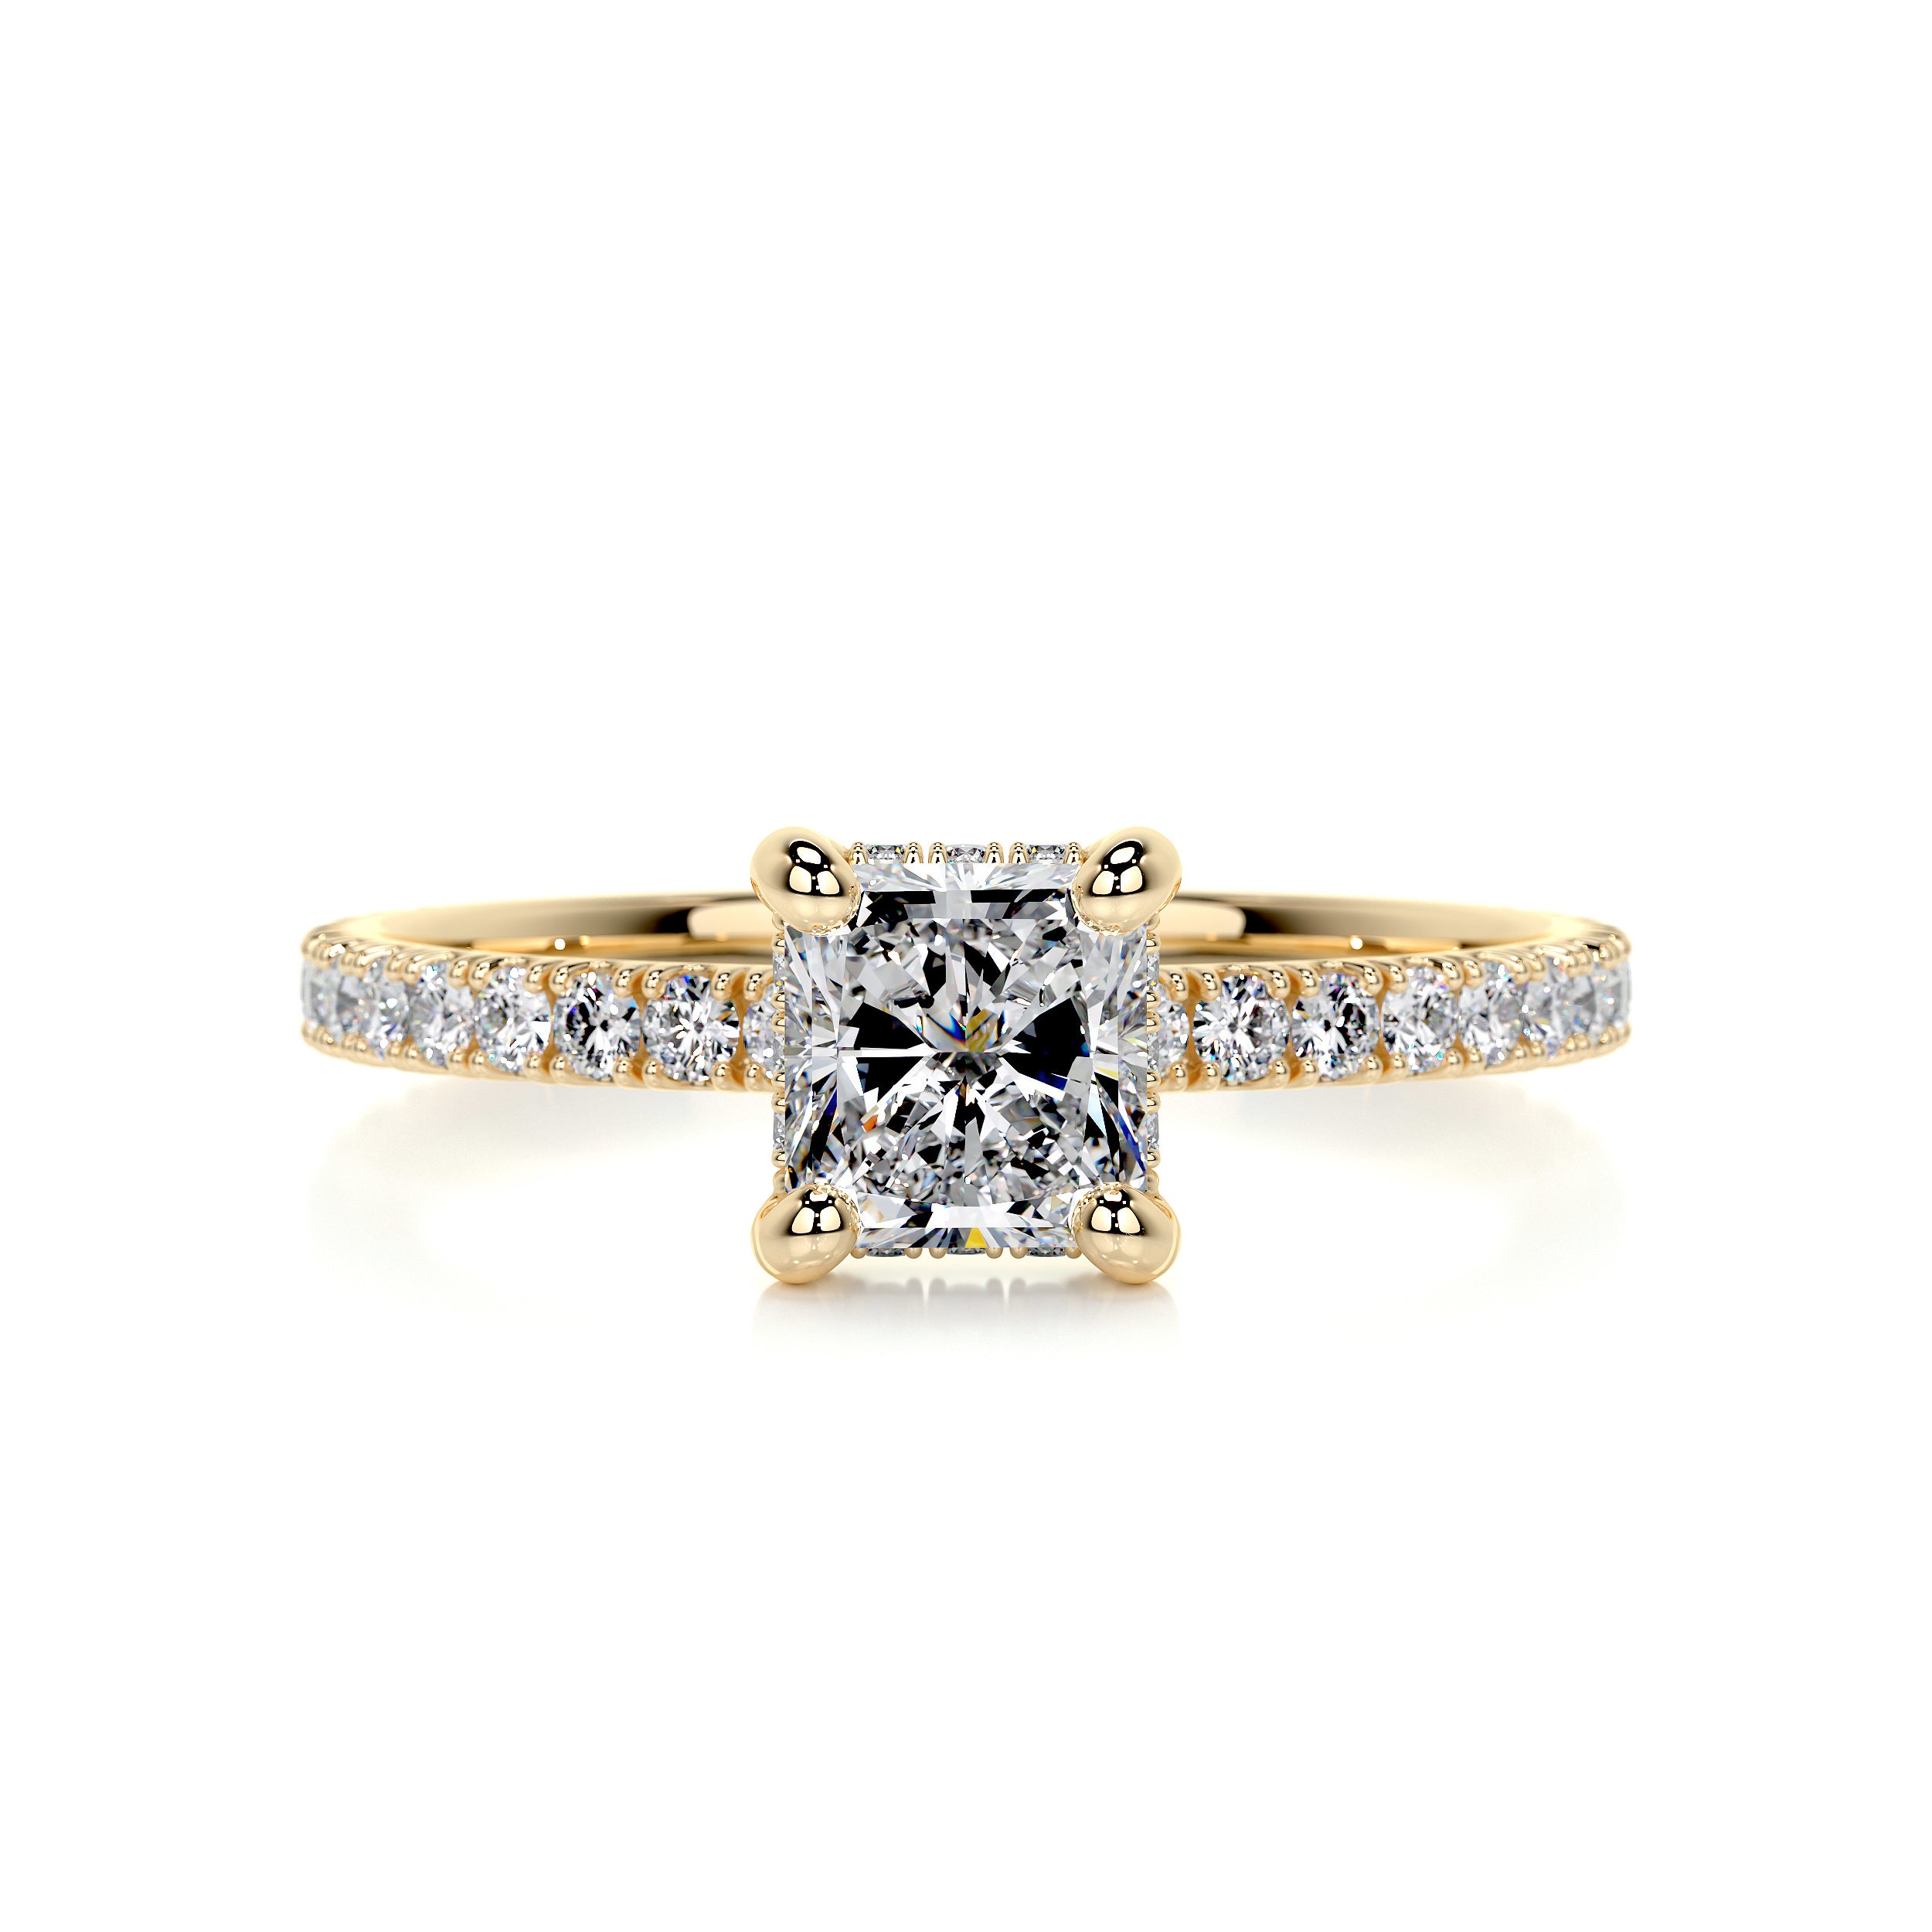 Deborah Diamond Engagement Ring   (1.50 Carat) -18K Yellow Gold